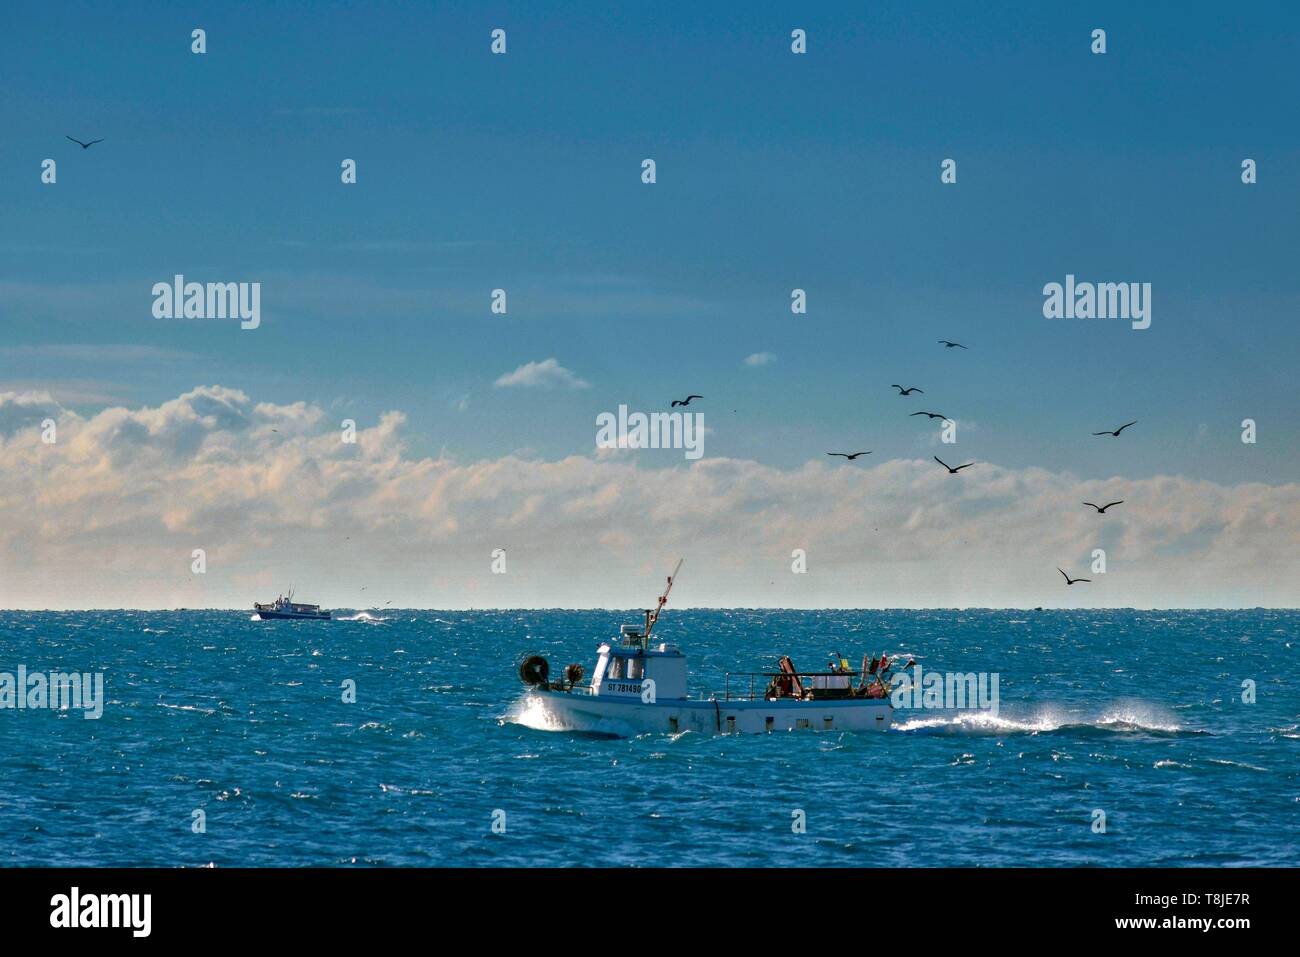 Francia, Herault, Agde, capo di Agde, la pesca in barca seguita da uccelli Foto Stock